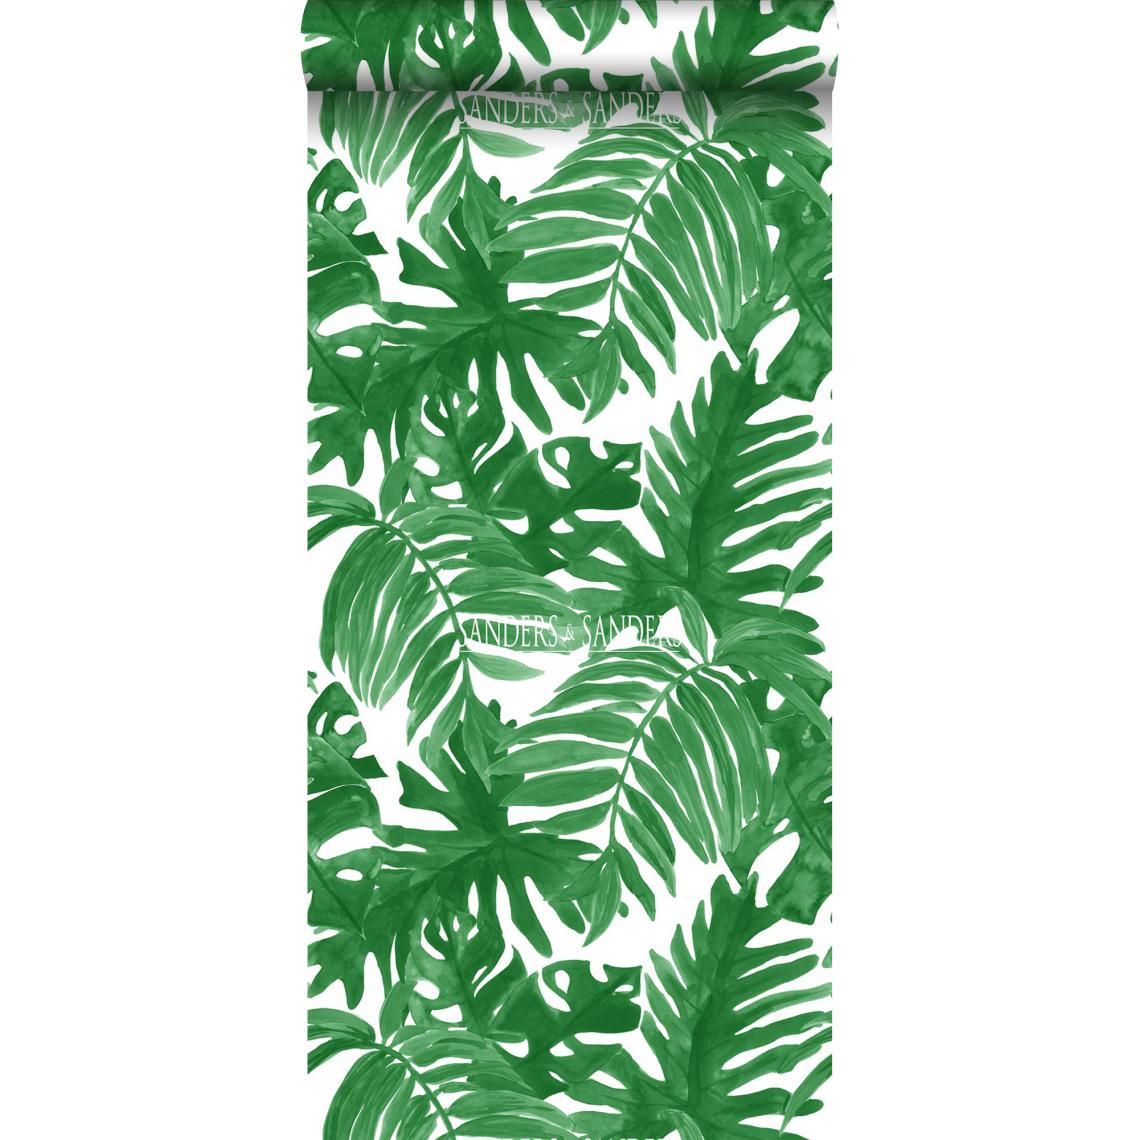 Sanders & Sanders - Sanders & Sanders papier peint feuilles de palmier vert jungle tropicale - 935266 - 0.53 x 10.05 m - Papier peint